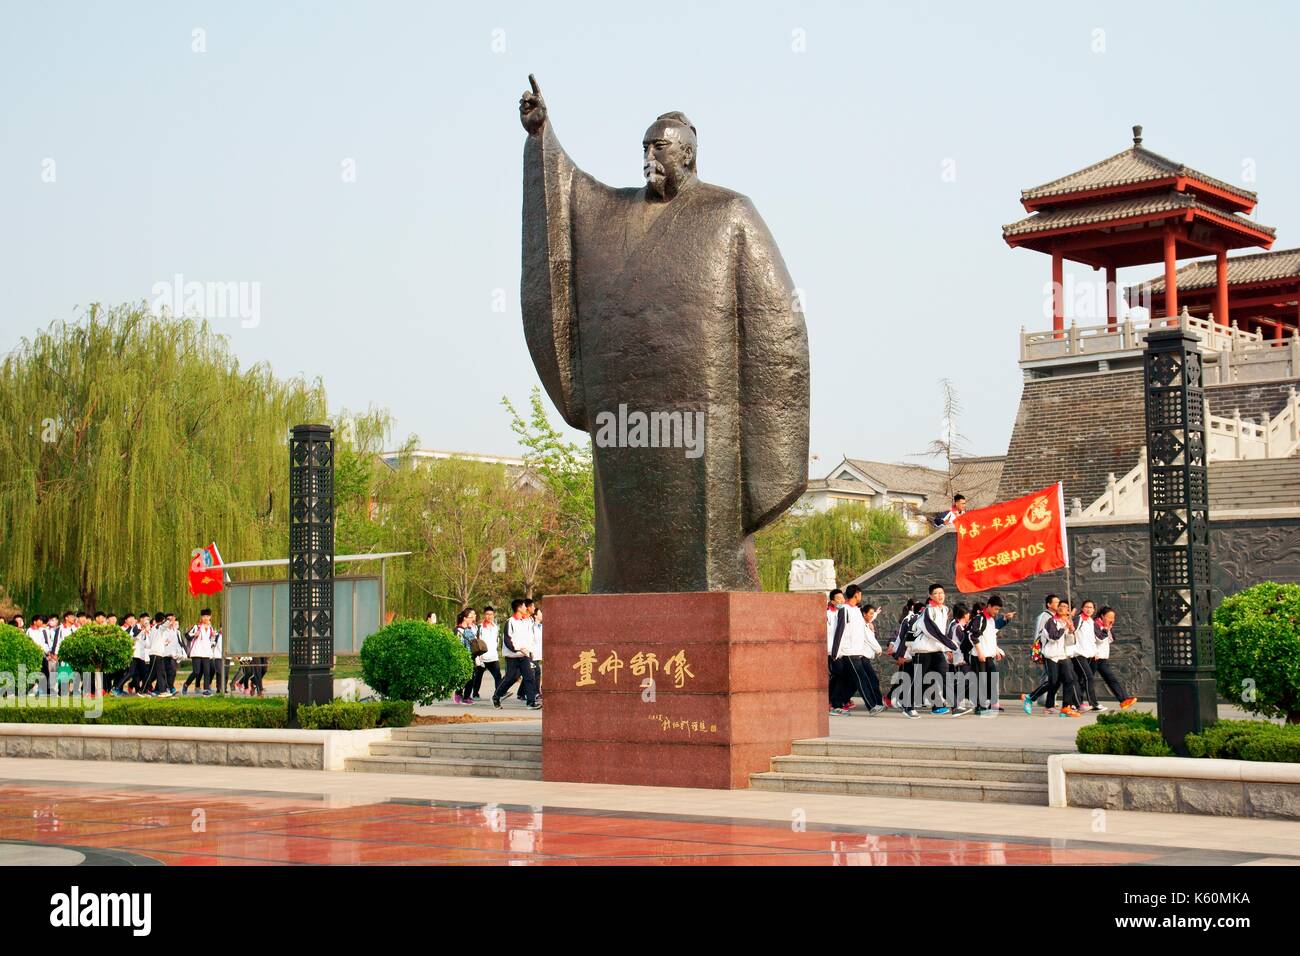 Cultura dongzi park, città di dezhou, Cina. studenti del college parade passato statua del filosofo confuciano dong zhongshu Foto Stock